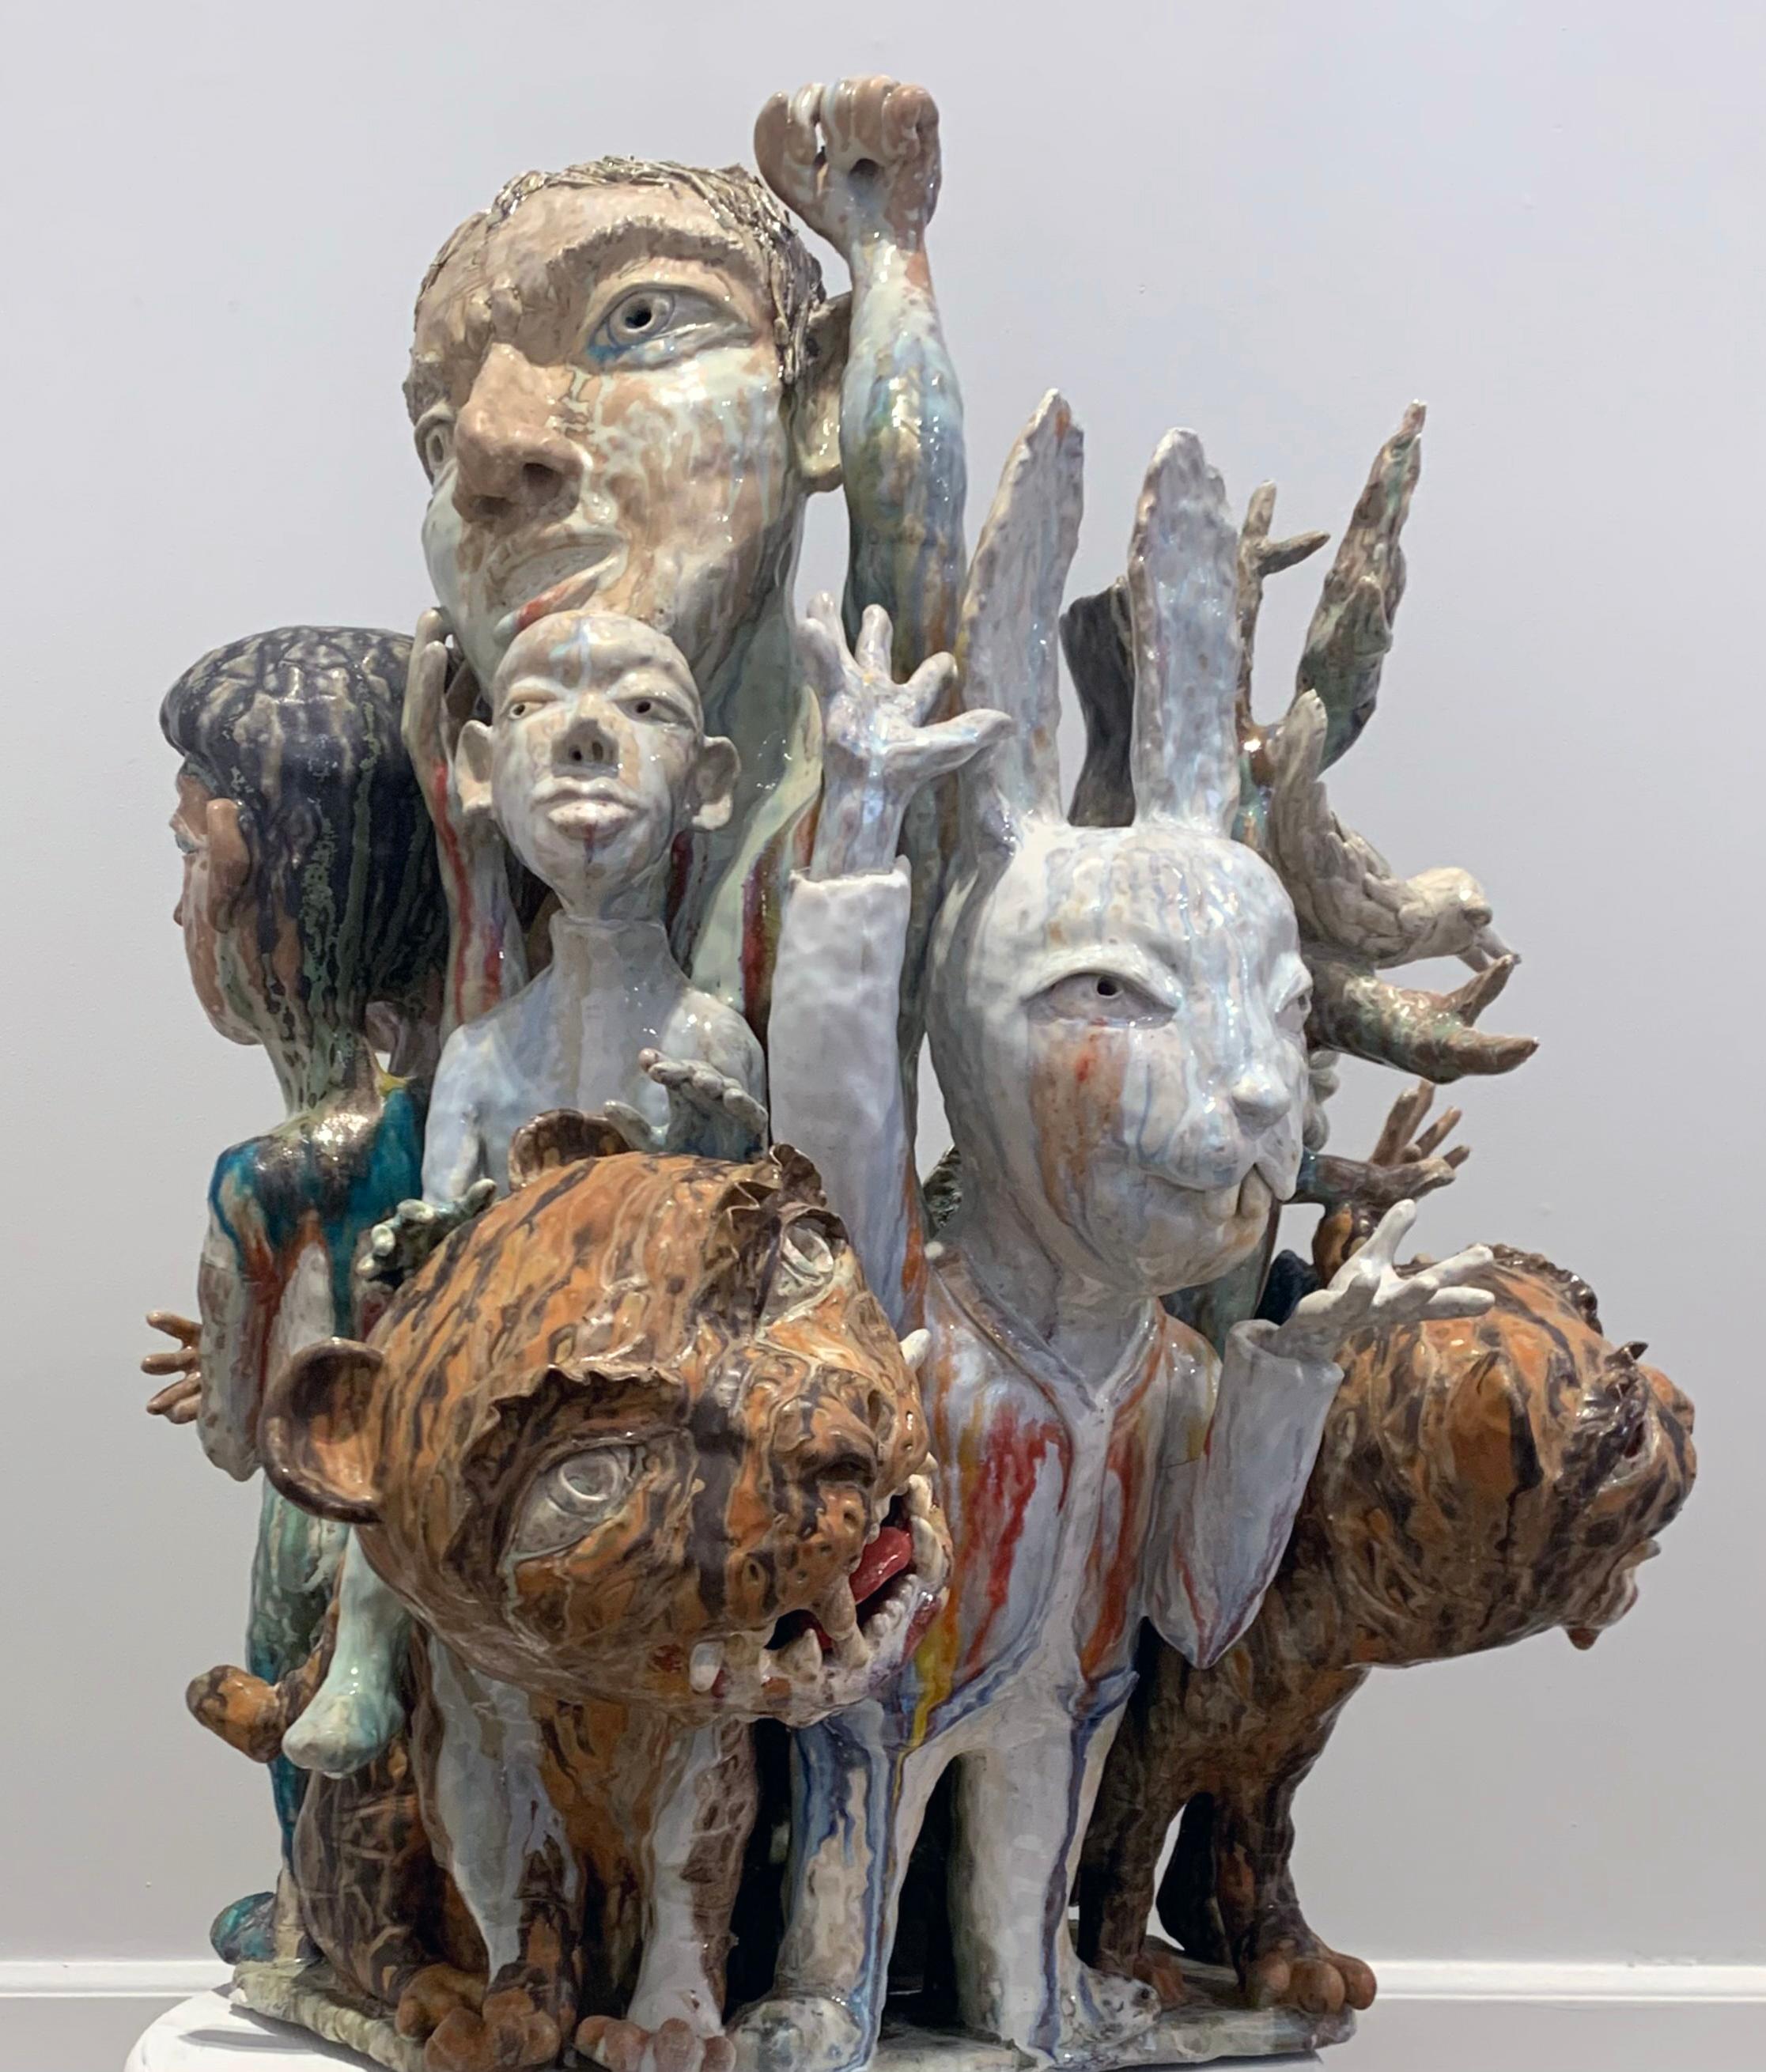 Les sculptures en céramique de SunKoo Yuh sont composées de groupes serrés de formes diverses, notamment de plantes, d'animaux, de poissons et de figures humaines. Si l'art coréen, le bouddhisme et les croyances confucéennes influencent certains